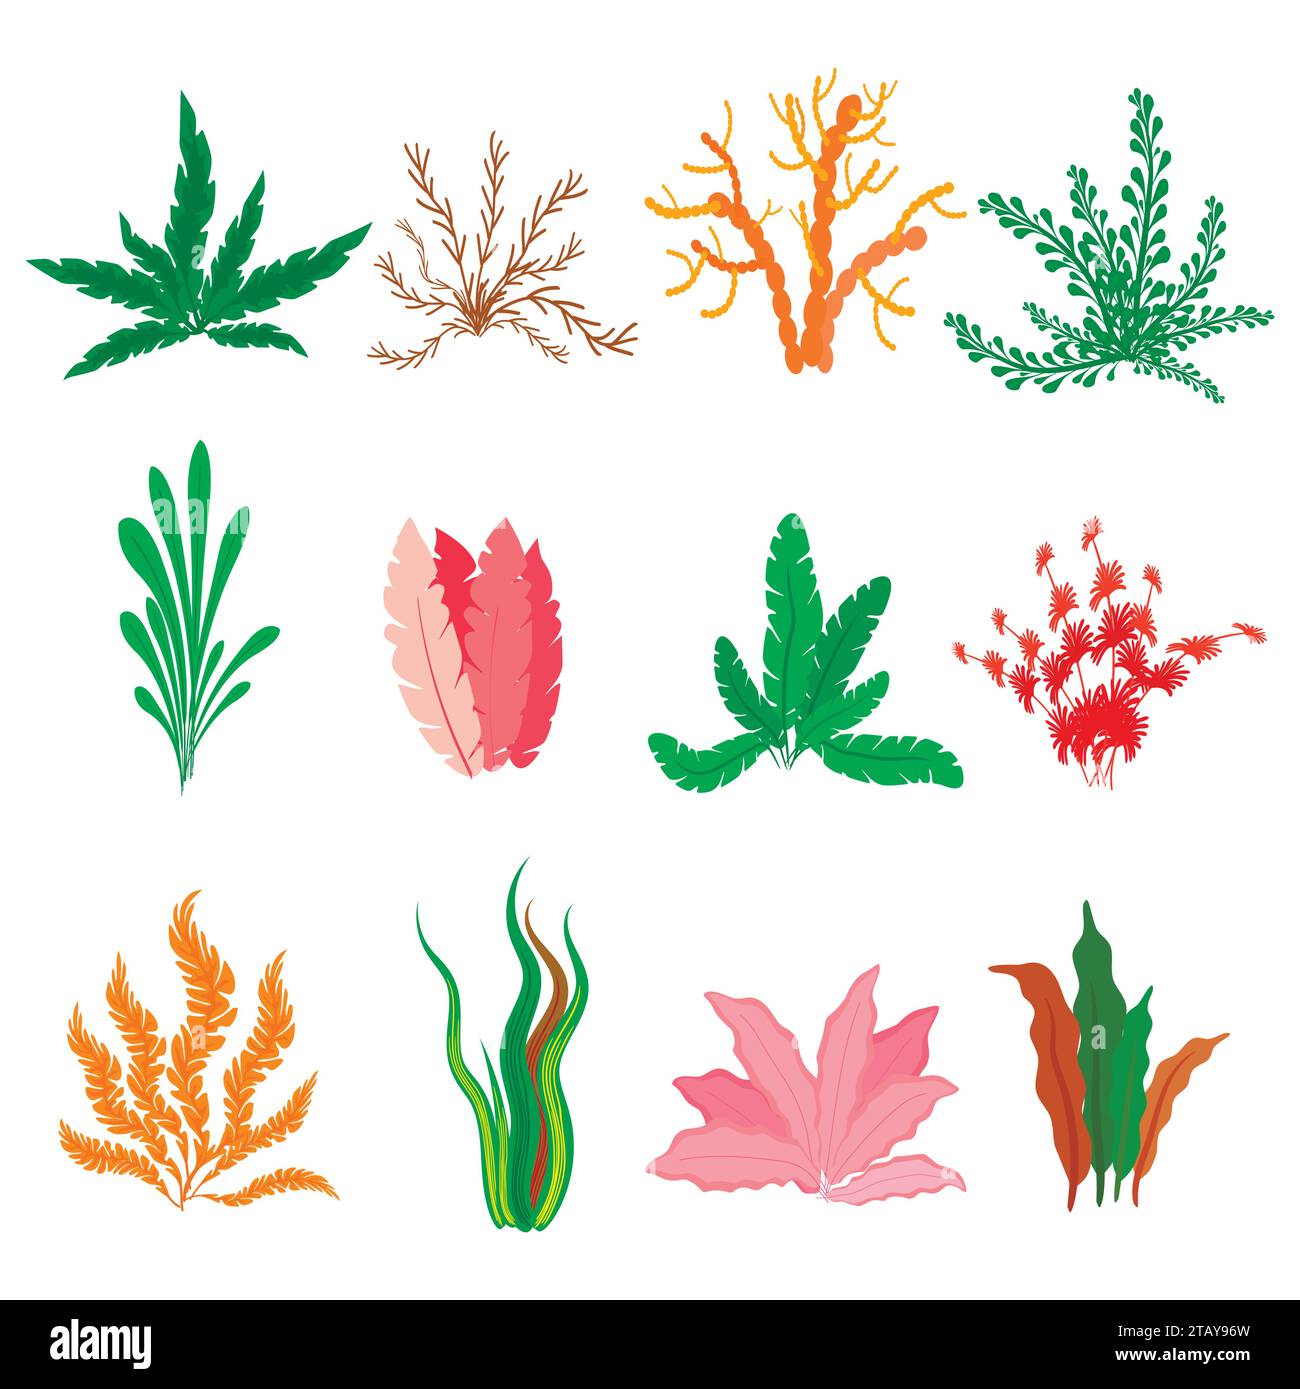 Unterwasser-Algen-Vektor auf weißem Hintergrund gesetzt. Meerespflanzen und Meeresalgen. Sammlung von Arten von Aquarienalgen. Vektorabbildung Stock Vektor